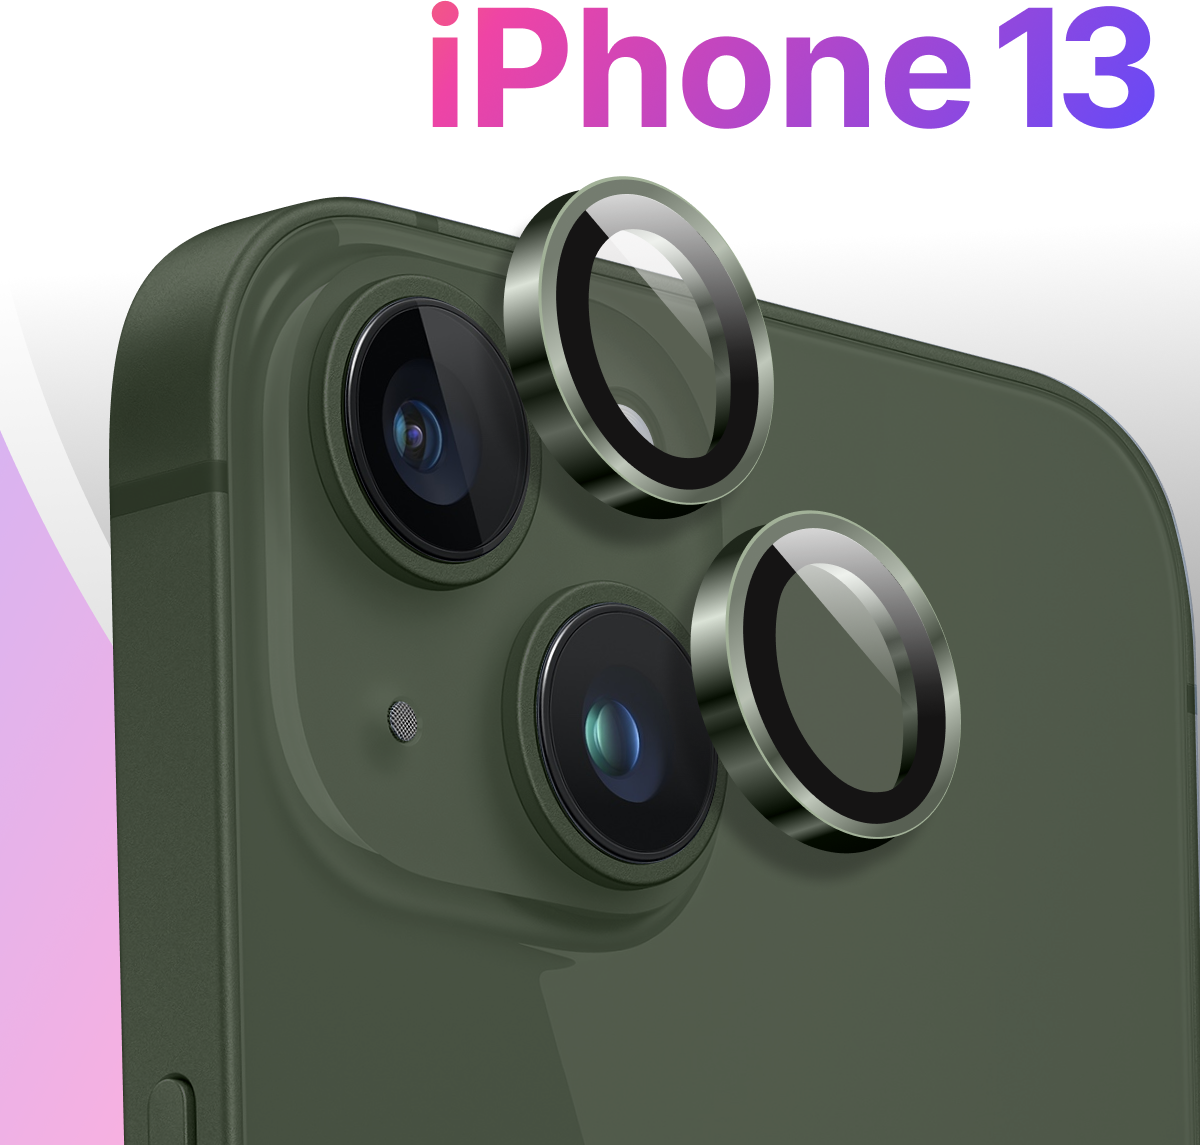 Комплект защитных стекол для камеры телефона Apple iPhone 13 / Противоударные линзы на камеру смартфона Эпл Айфон 13 / Защита камеры / Графит